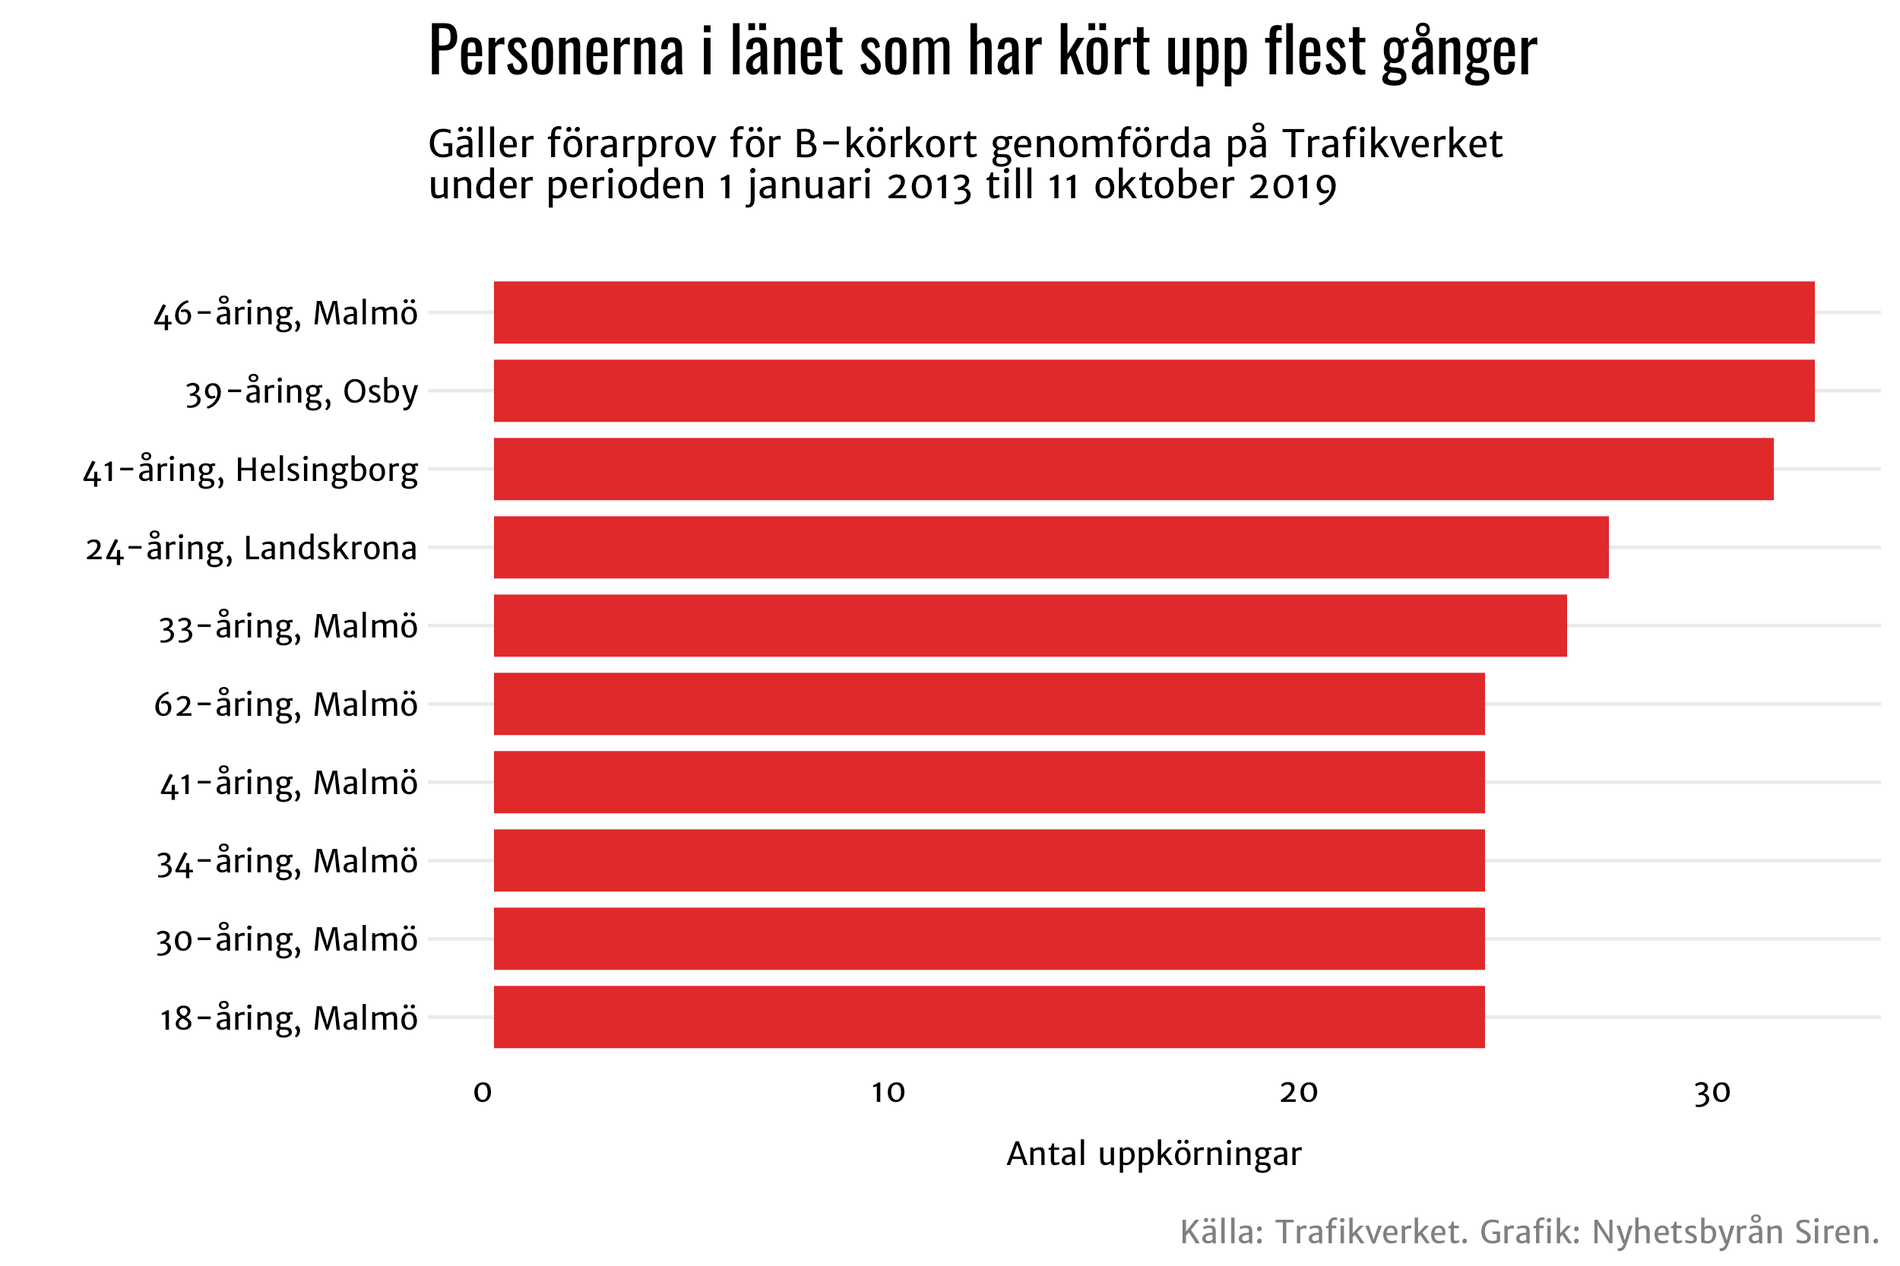 Sju av de tio skåningar som kuggat flest gånger på uppkörningen kommer från Malmö.